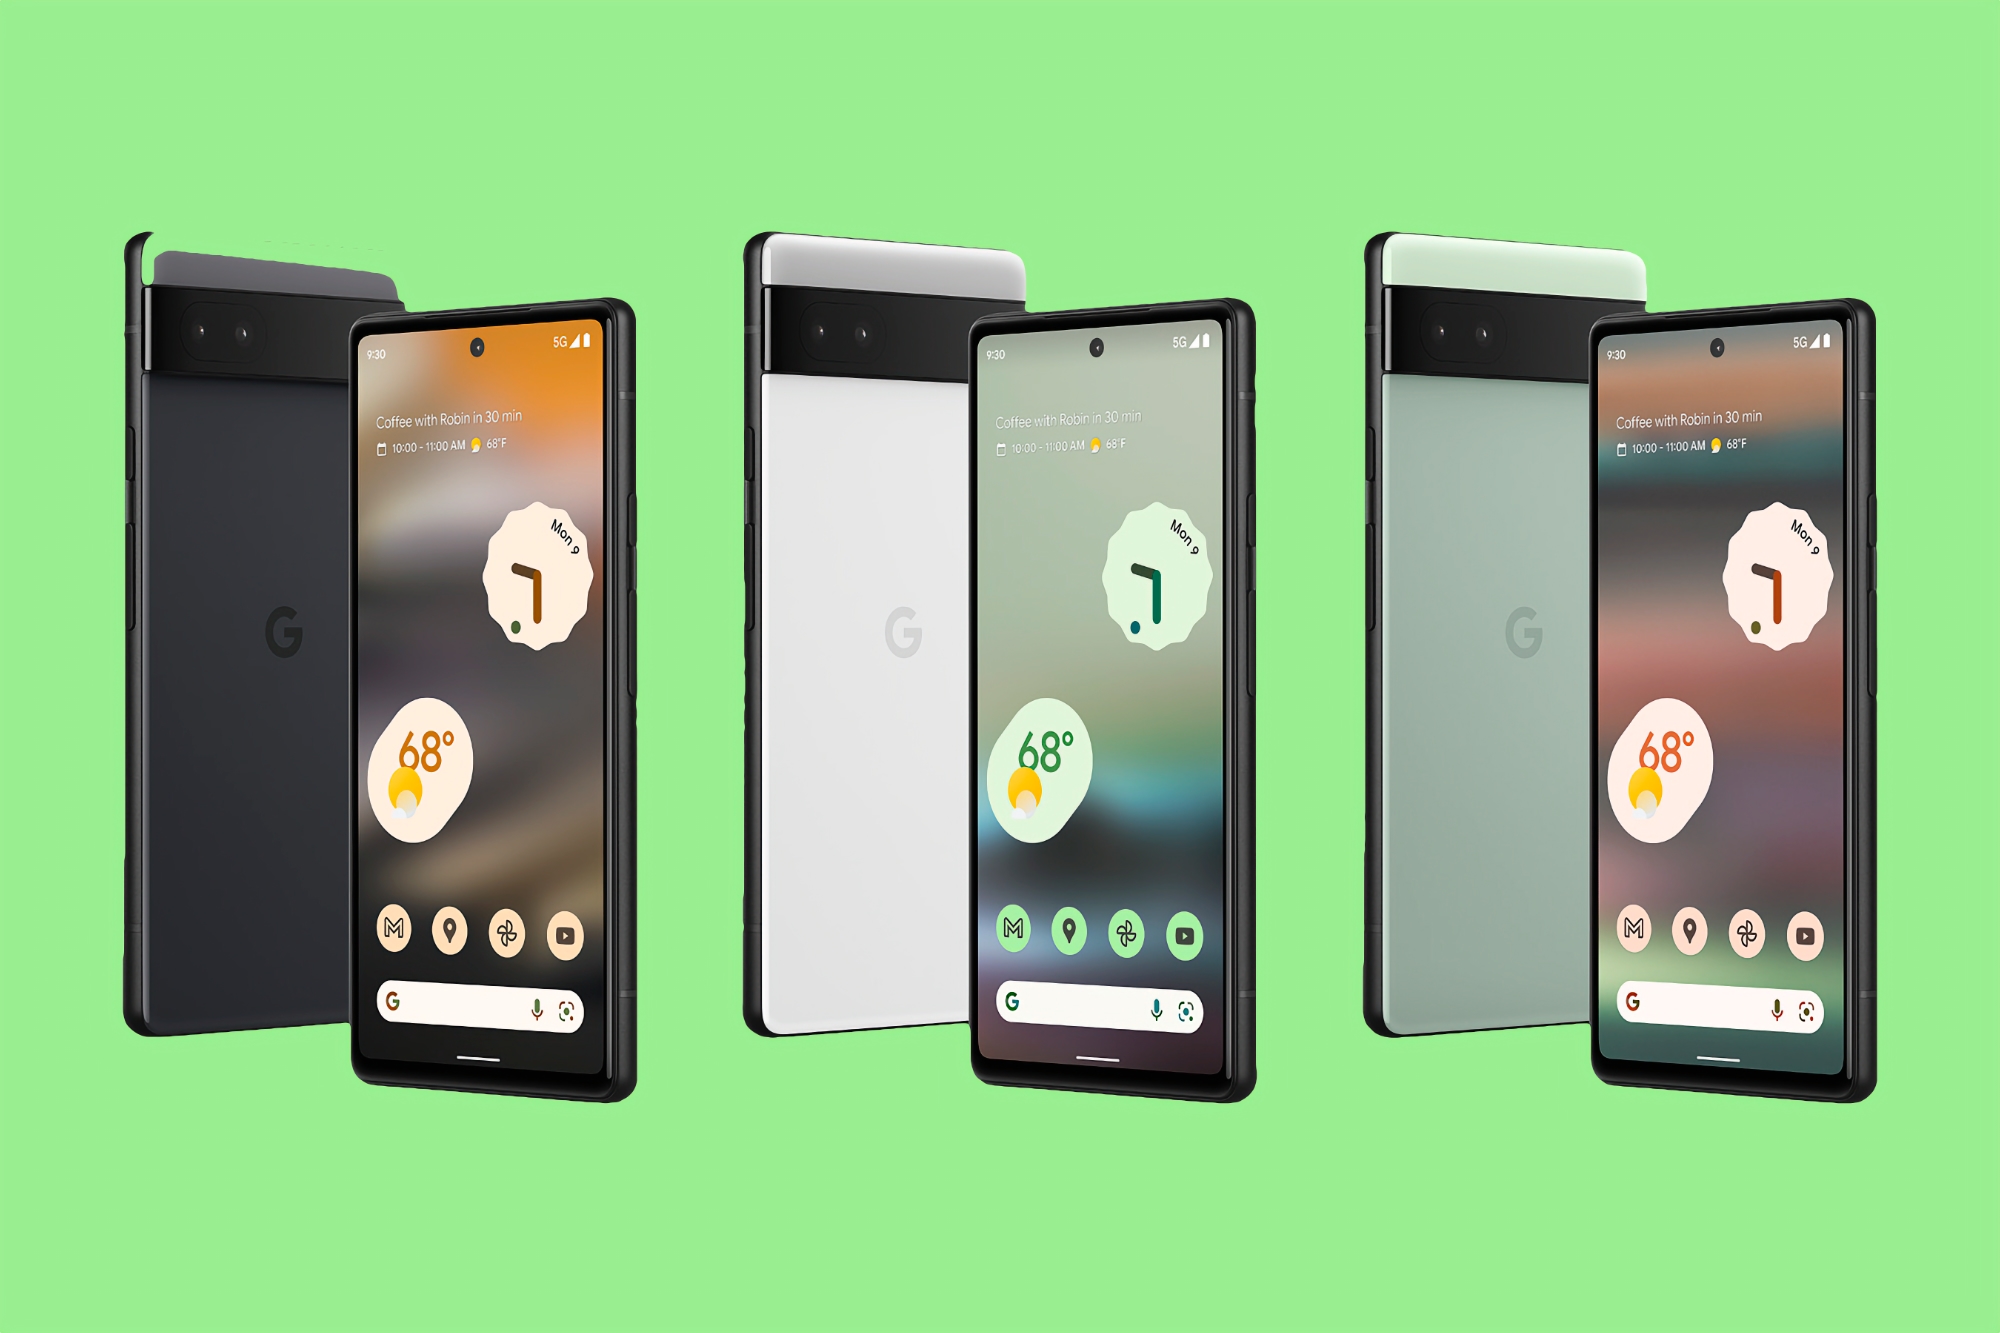 Oferta del día: Google Pixel 6a con cámara insignia y Android 13 en oferta en Amazon por 344€ (105€ de descuento)